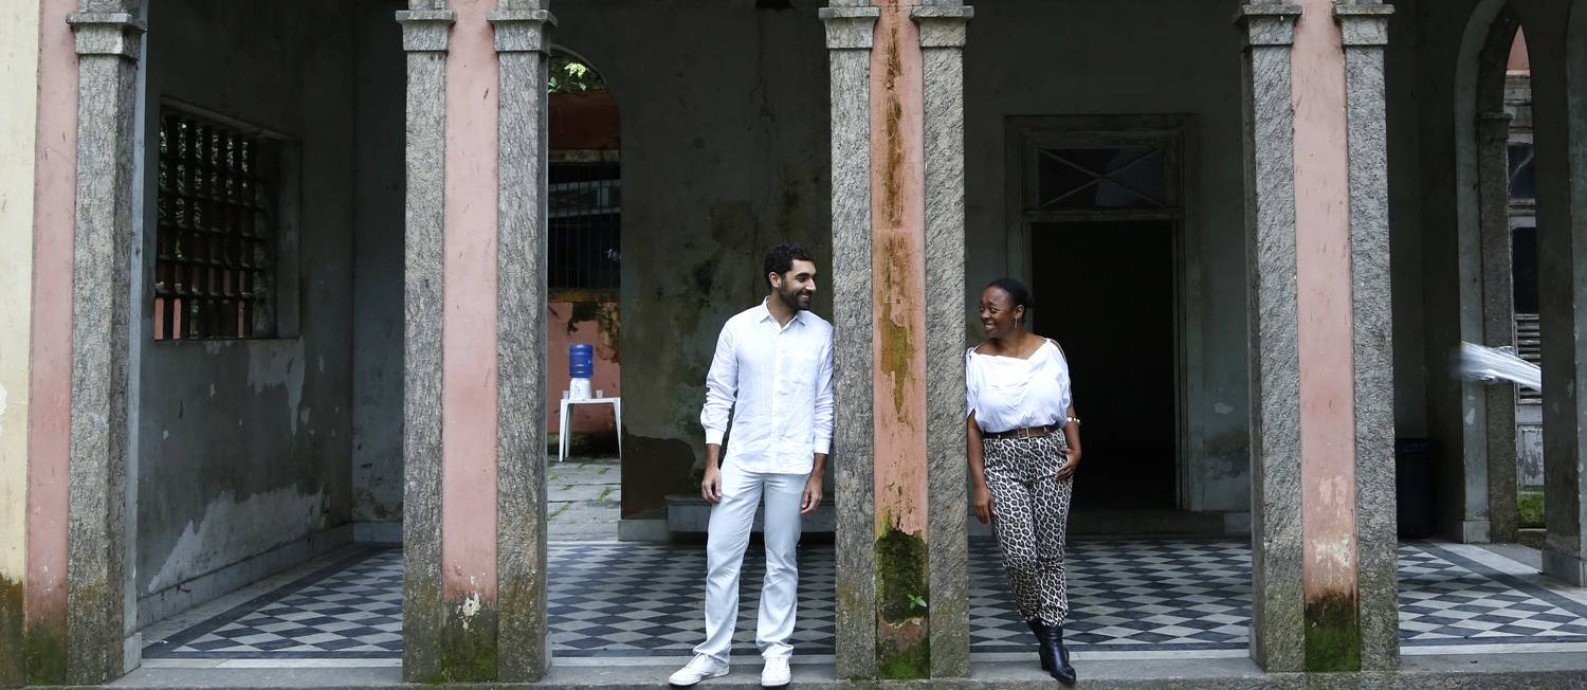 Bernardo Mosqueira e Keyna Eleison, curadores do Manjar 'Para habitar liberdades' Foto: Agência O Globo